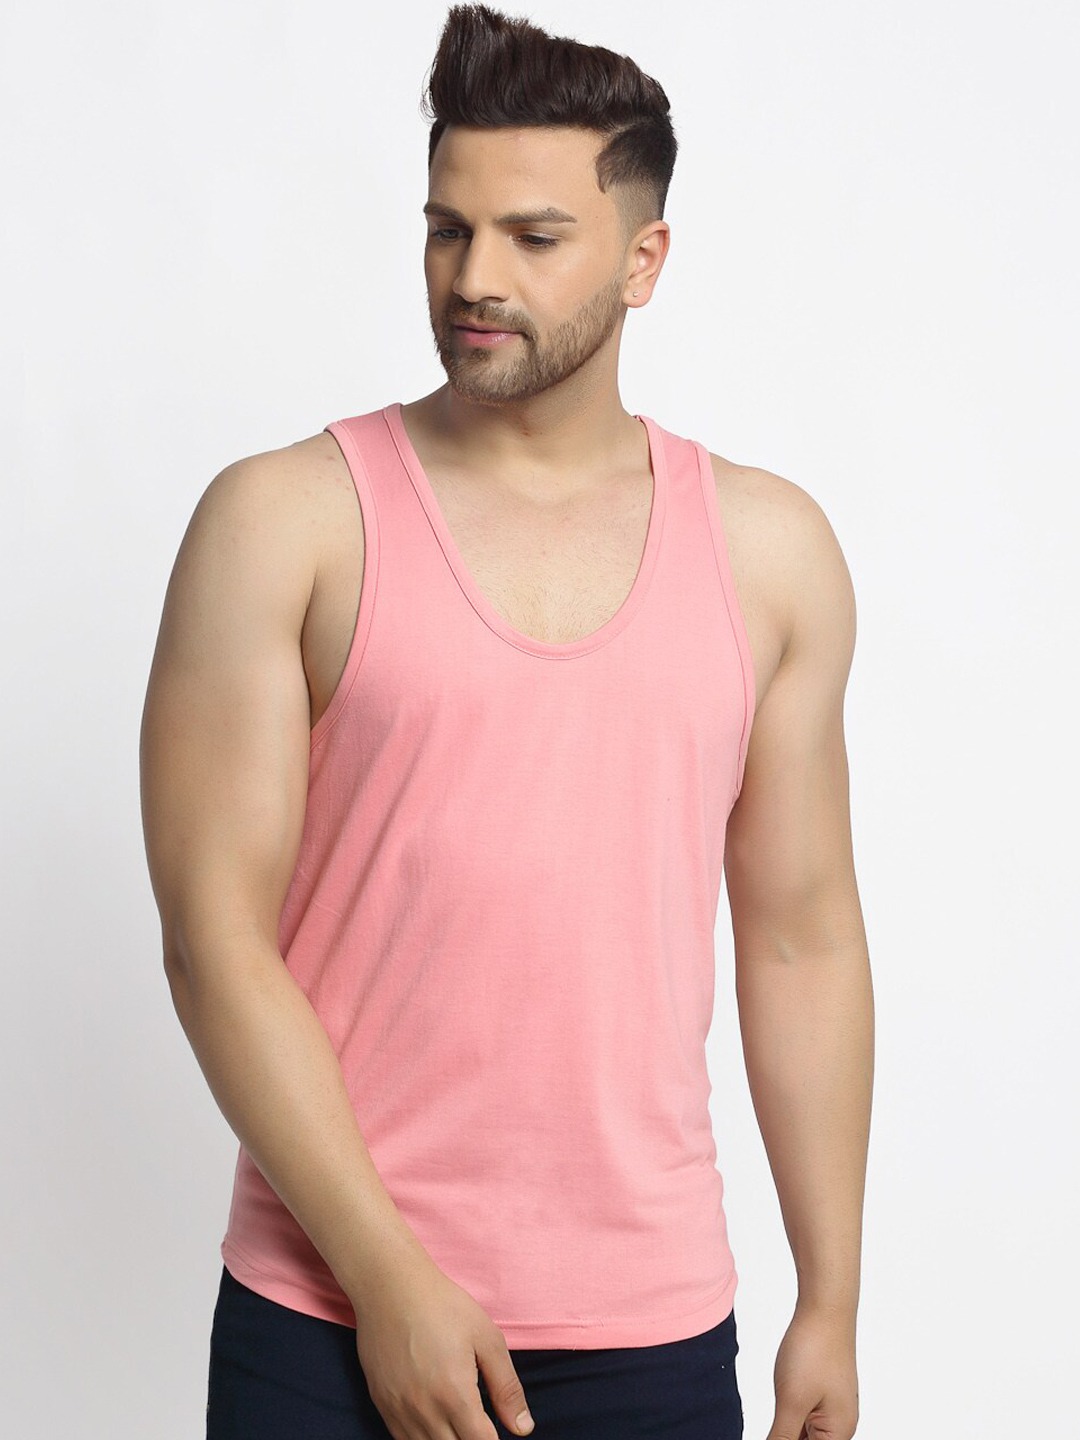 Clothing Innerwear Vests | Friskers Men Coral Pink Solid Cotton Gym Vest - YV59222